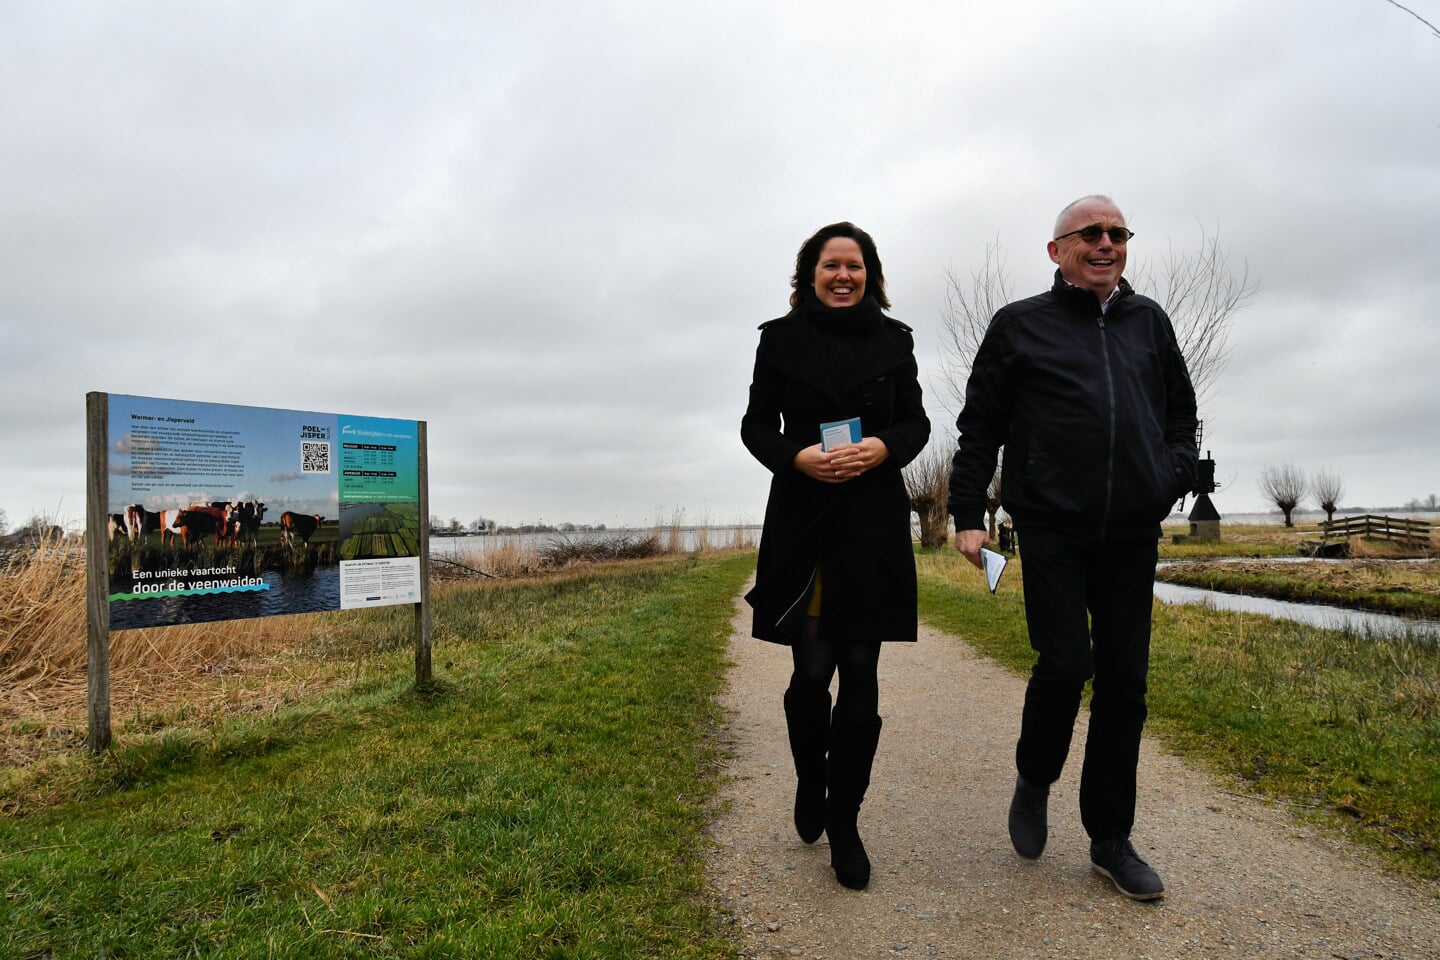 Anneke Wijdogen-Vis en Jeroen Schalkwijk liepen bij de presentatie van de flyer een stukje van de route rond De Poelboerderij en genoten van het schitterende polderlandschap.  